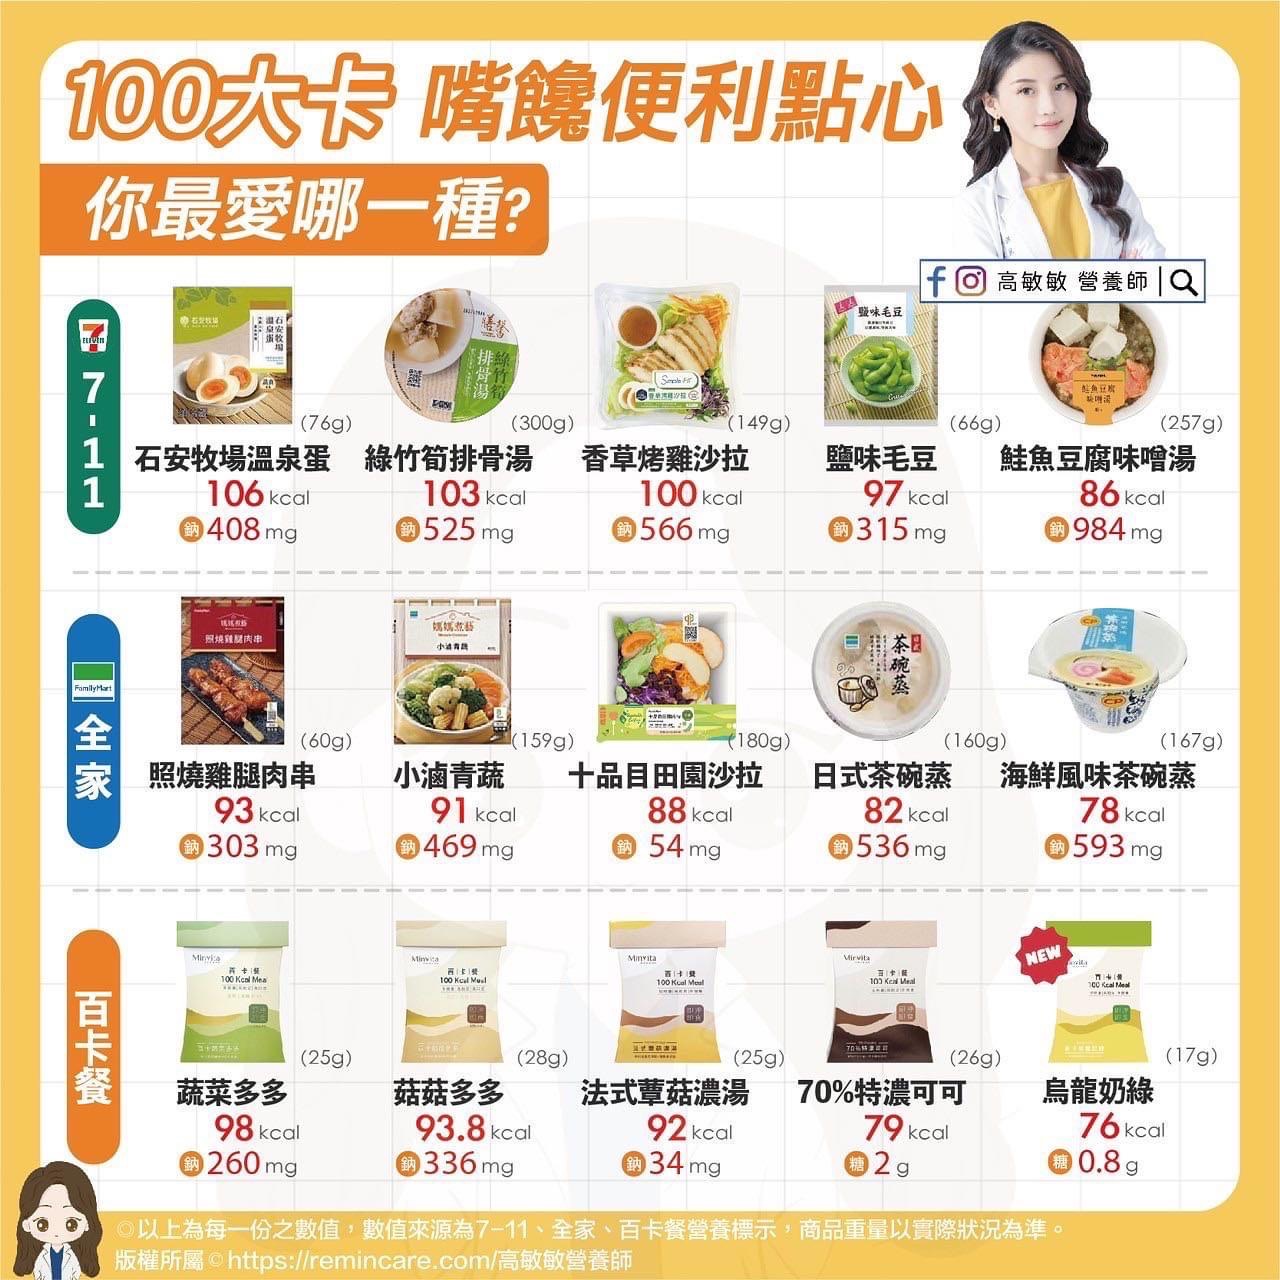 嘴饞想吃東西！便利商店100大卡小零嘴，解饞又維持好身材 - 台北郵報 | The Taipei Post